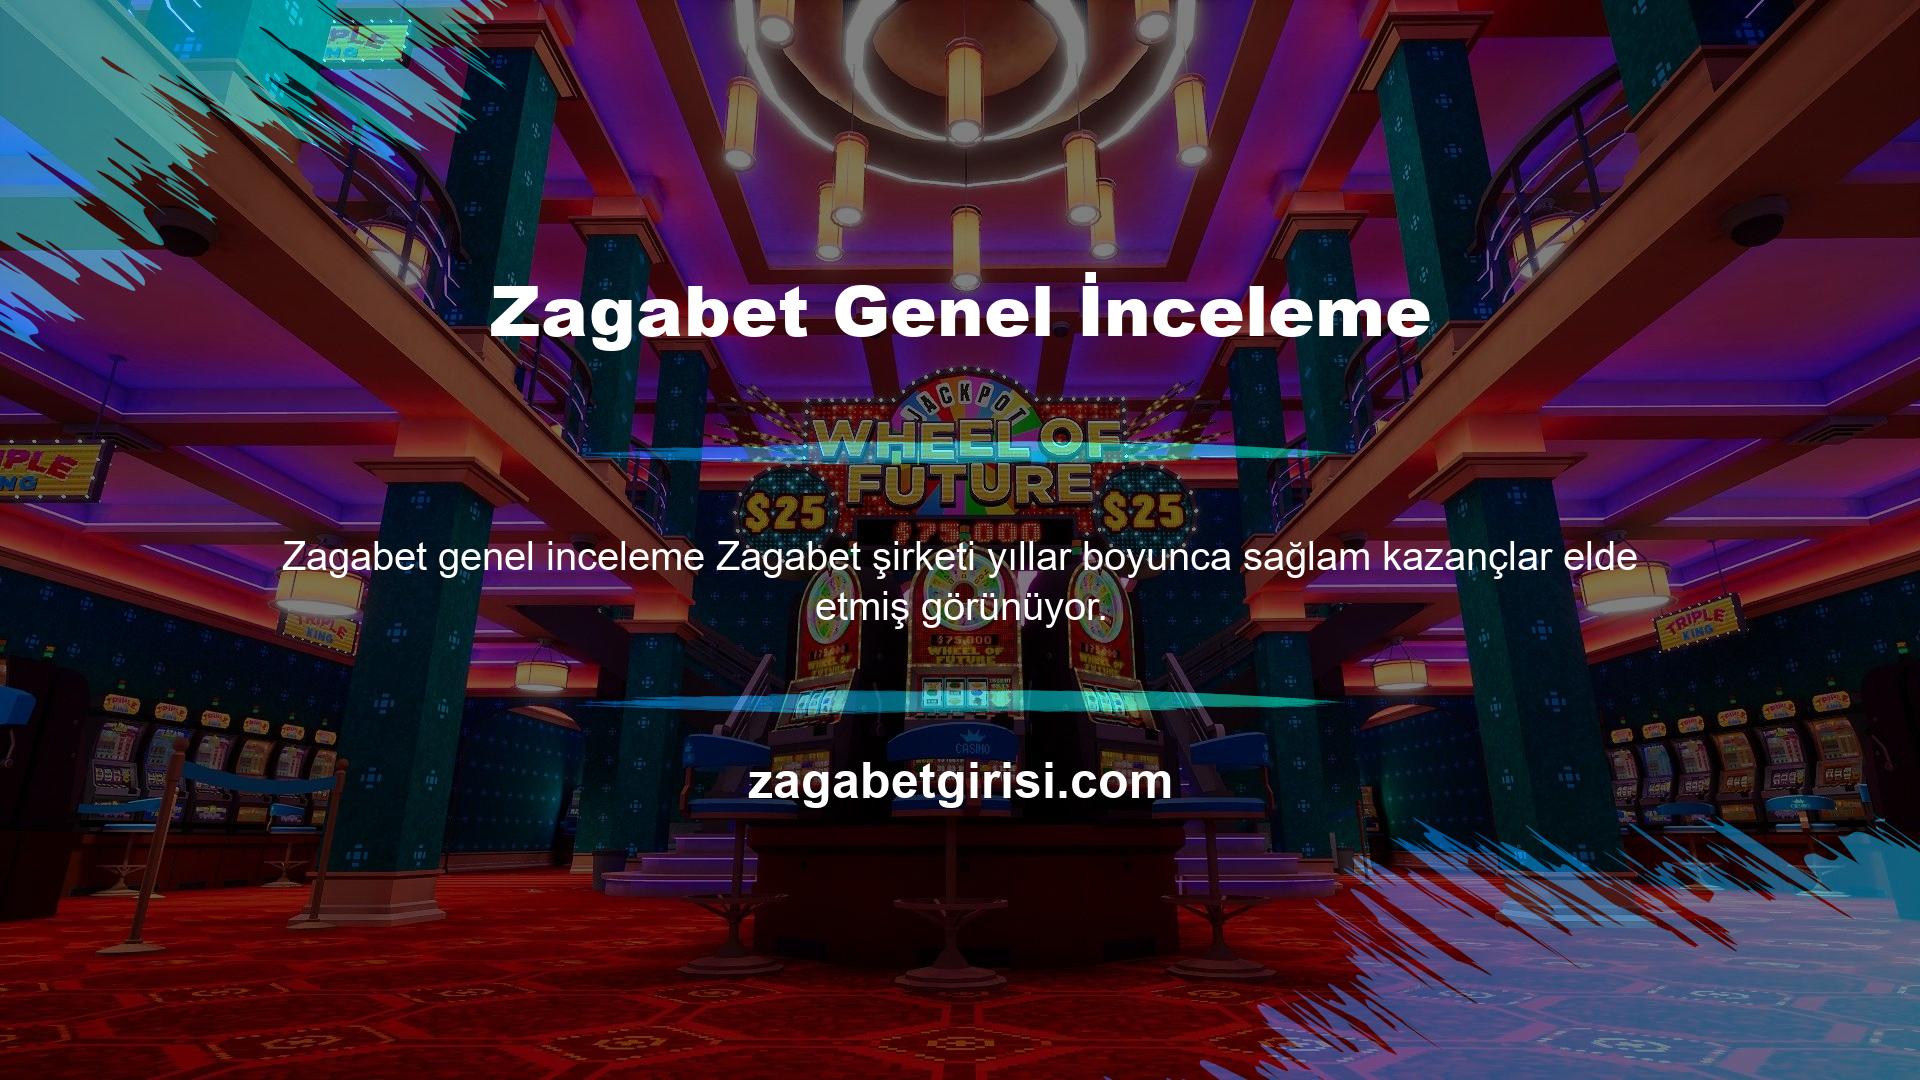 Zagabet lisansı, oyunculara Zagabet genel inceleme şeffaflık ile doğru ve adil bir bahis ortamı sağlar